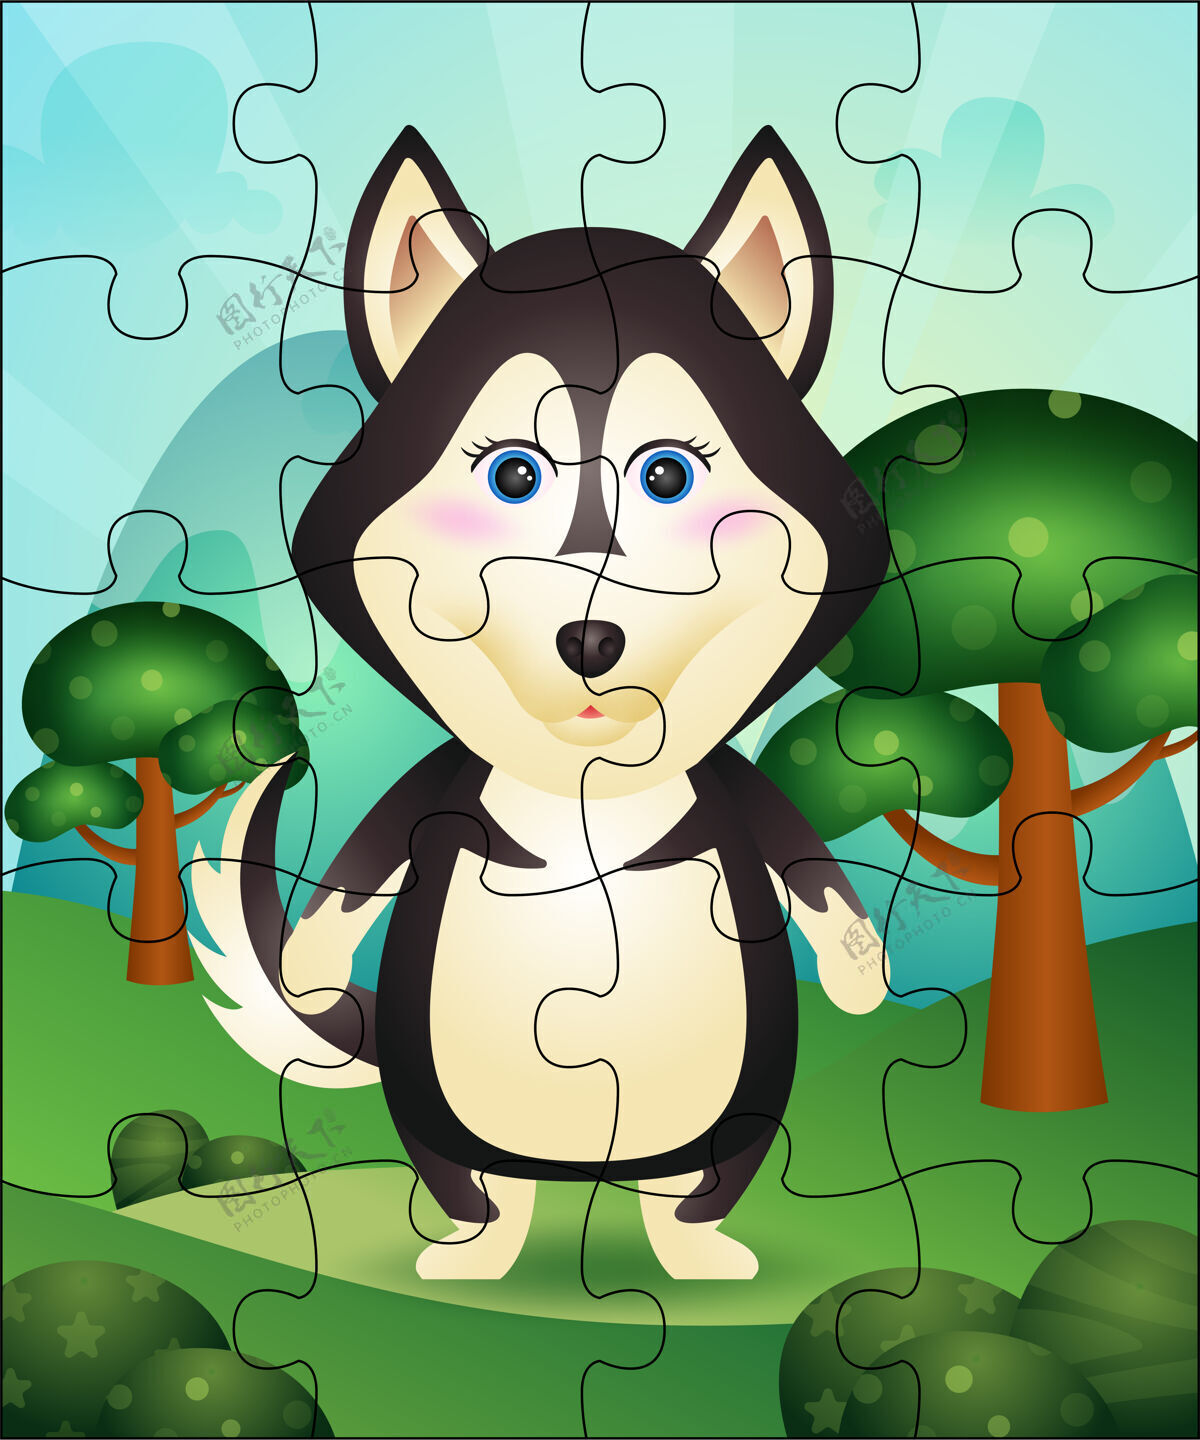 草儿童益智游戏与可爱的哈士奇狗插图益智学习想法